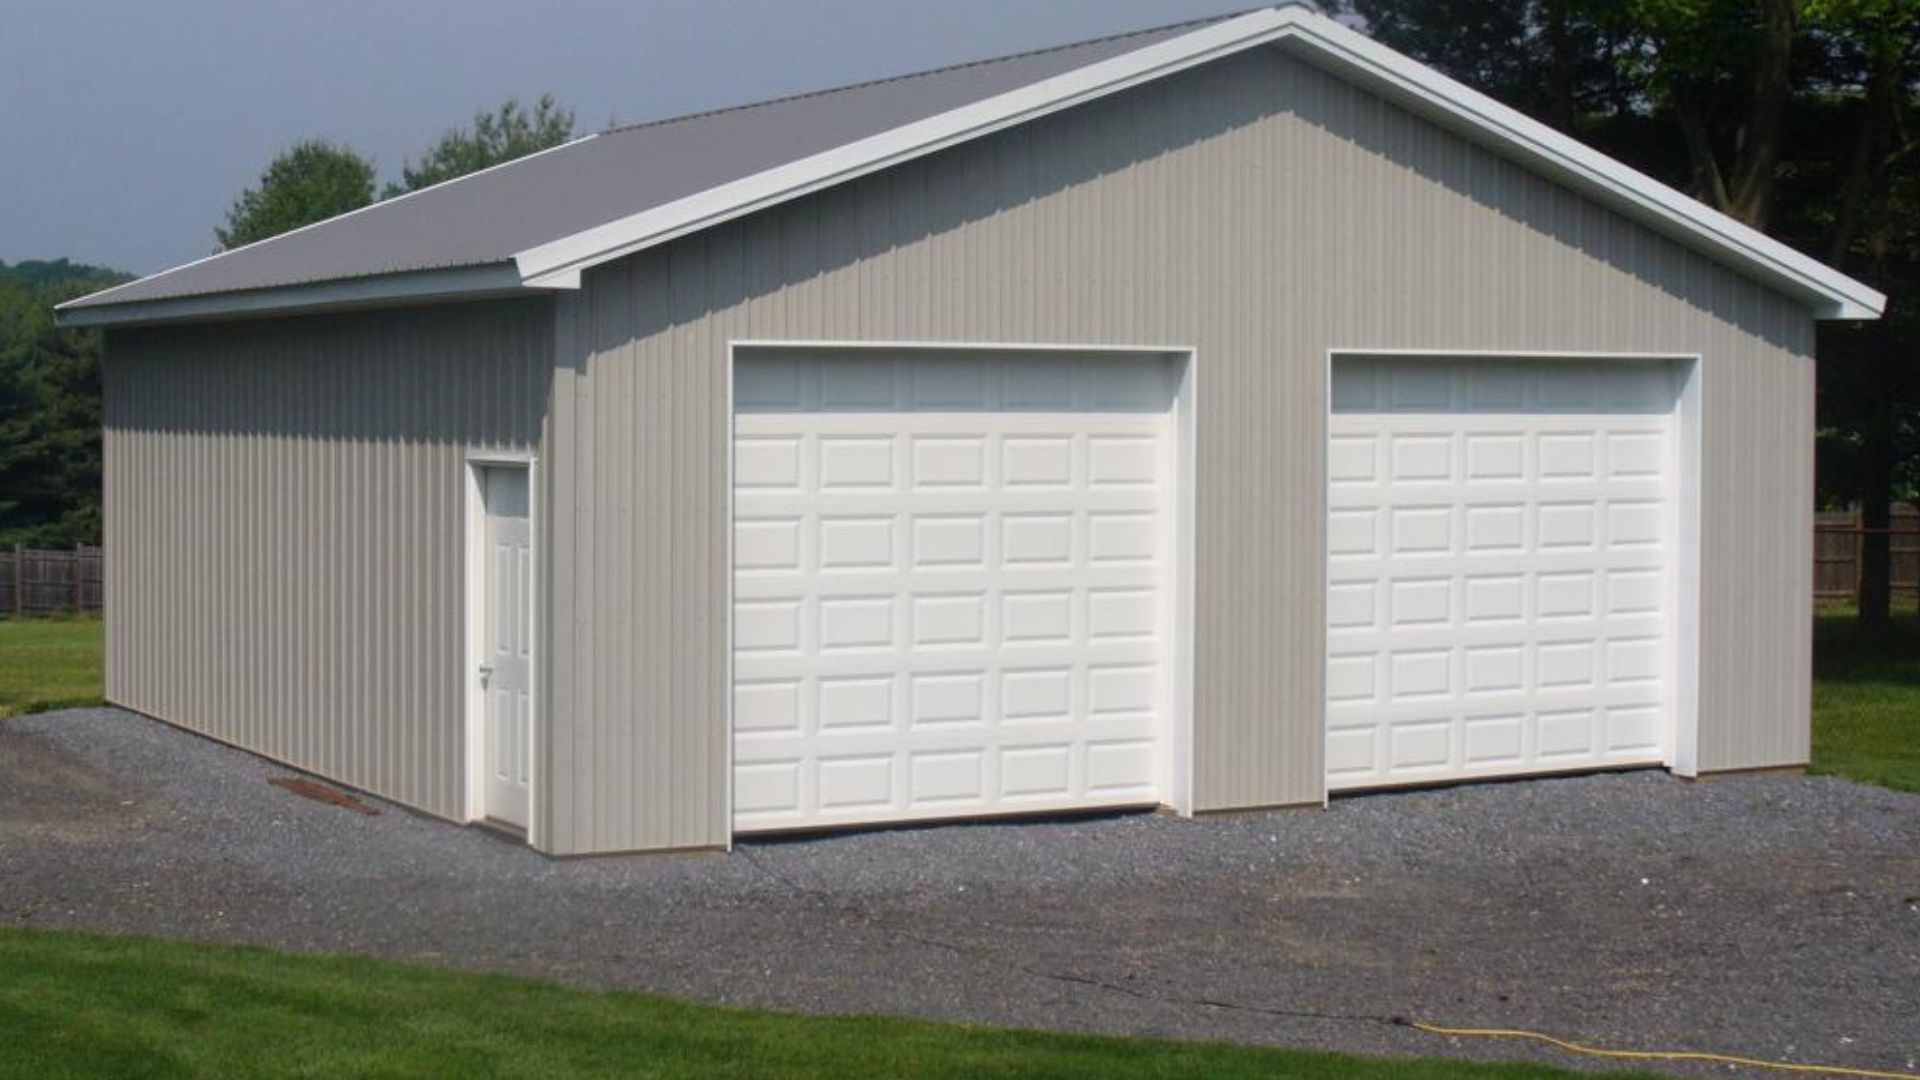 An extra large garage doors